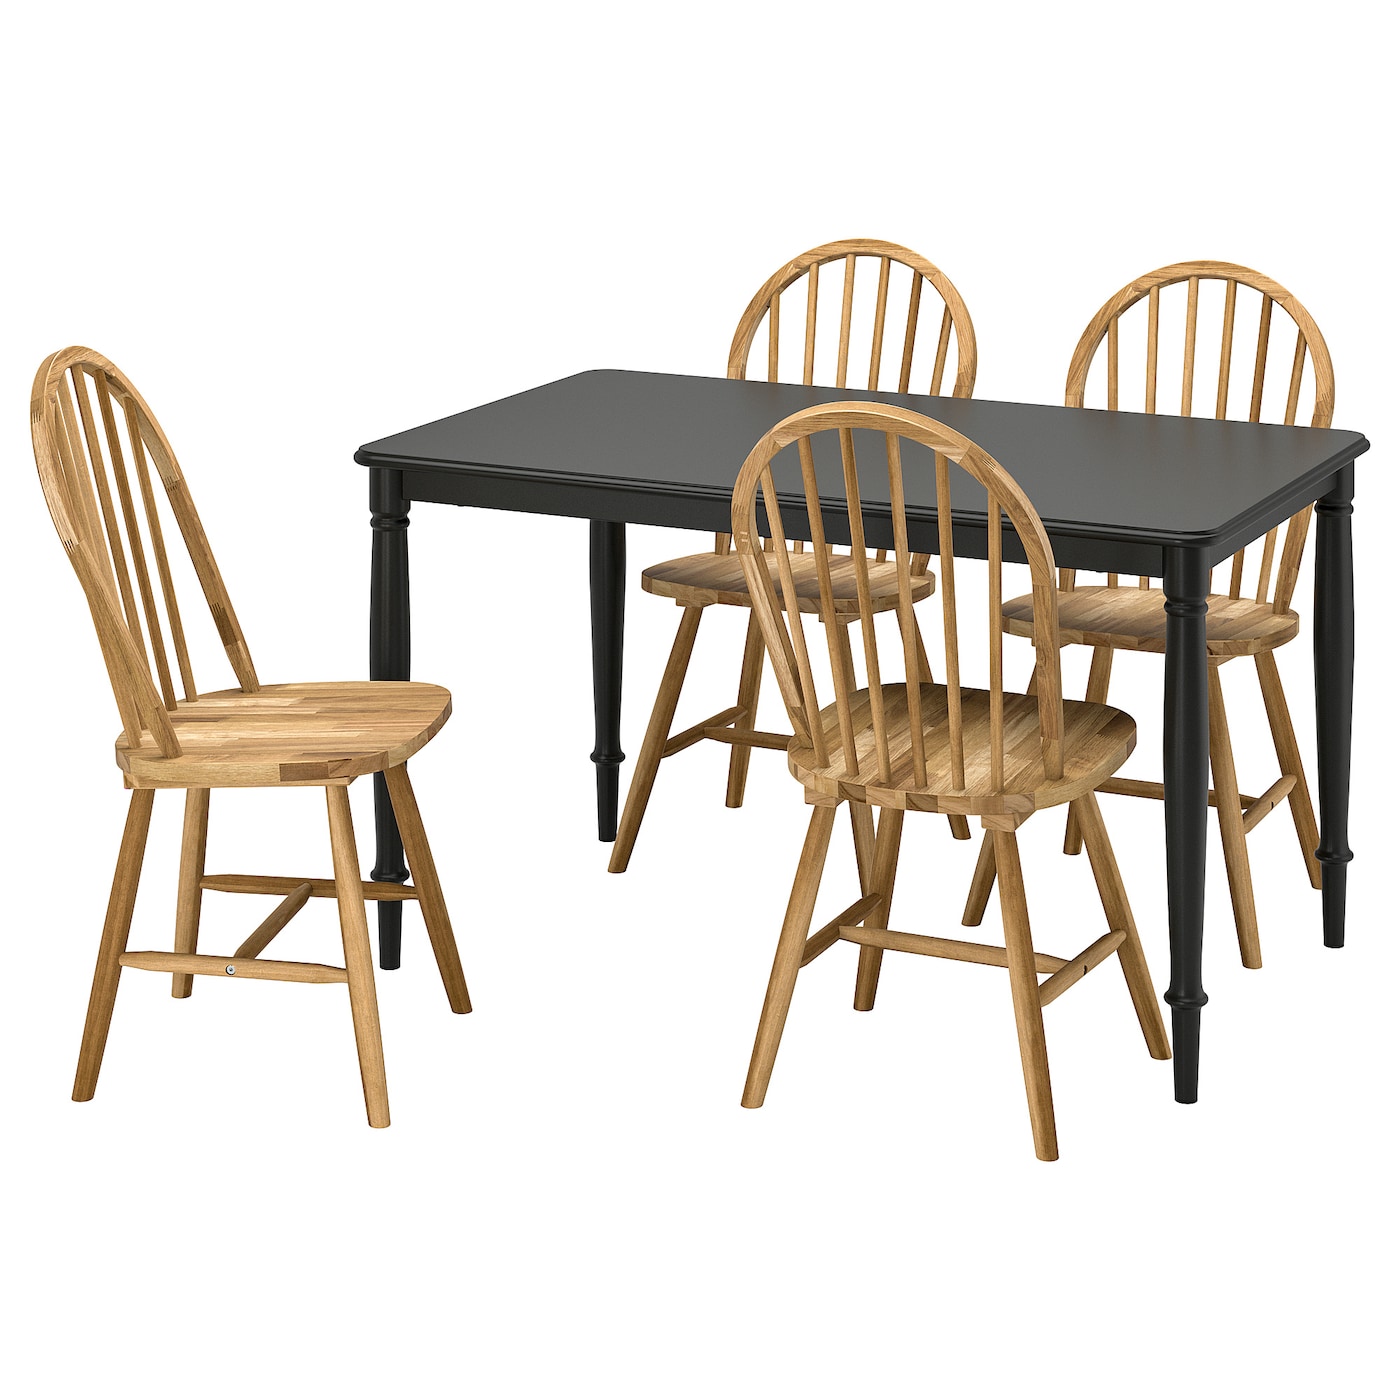 Стол и 4 стула - DANDERYD / SKOGSTA IKEA/ ДАНДЭРЮД / СКОГСТА ИКЕА, 130х75/94х43 см,  черный/под беленый дуб